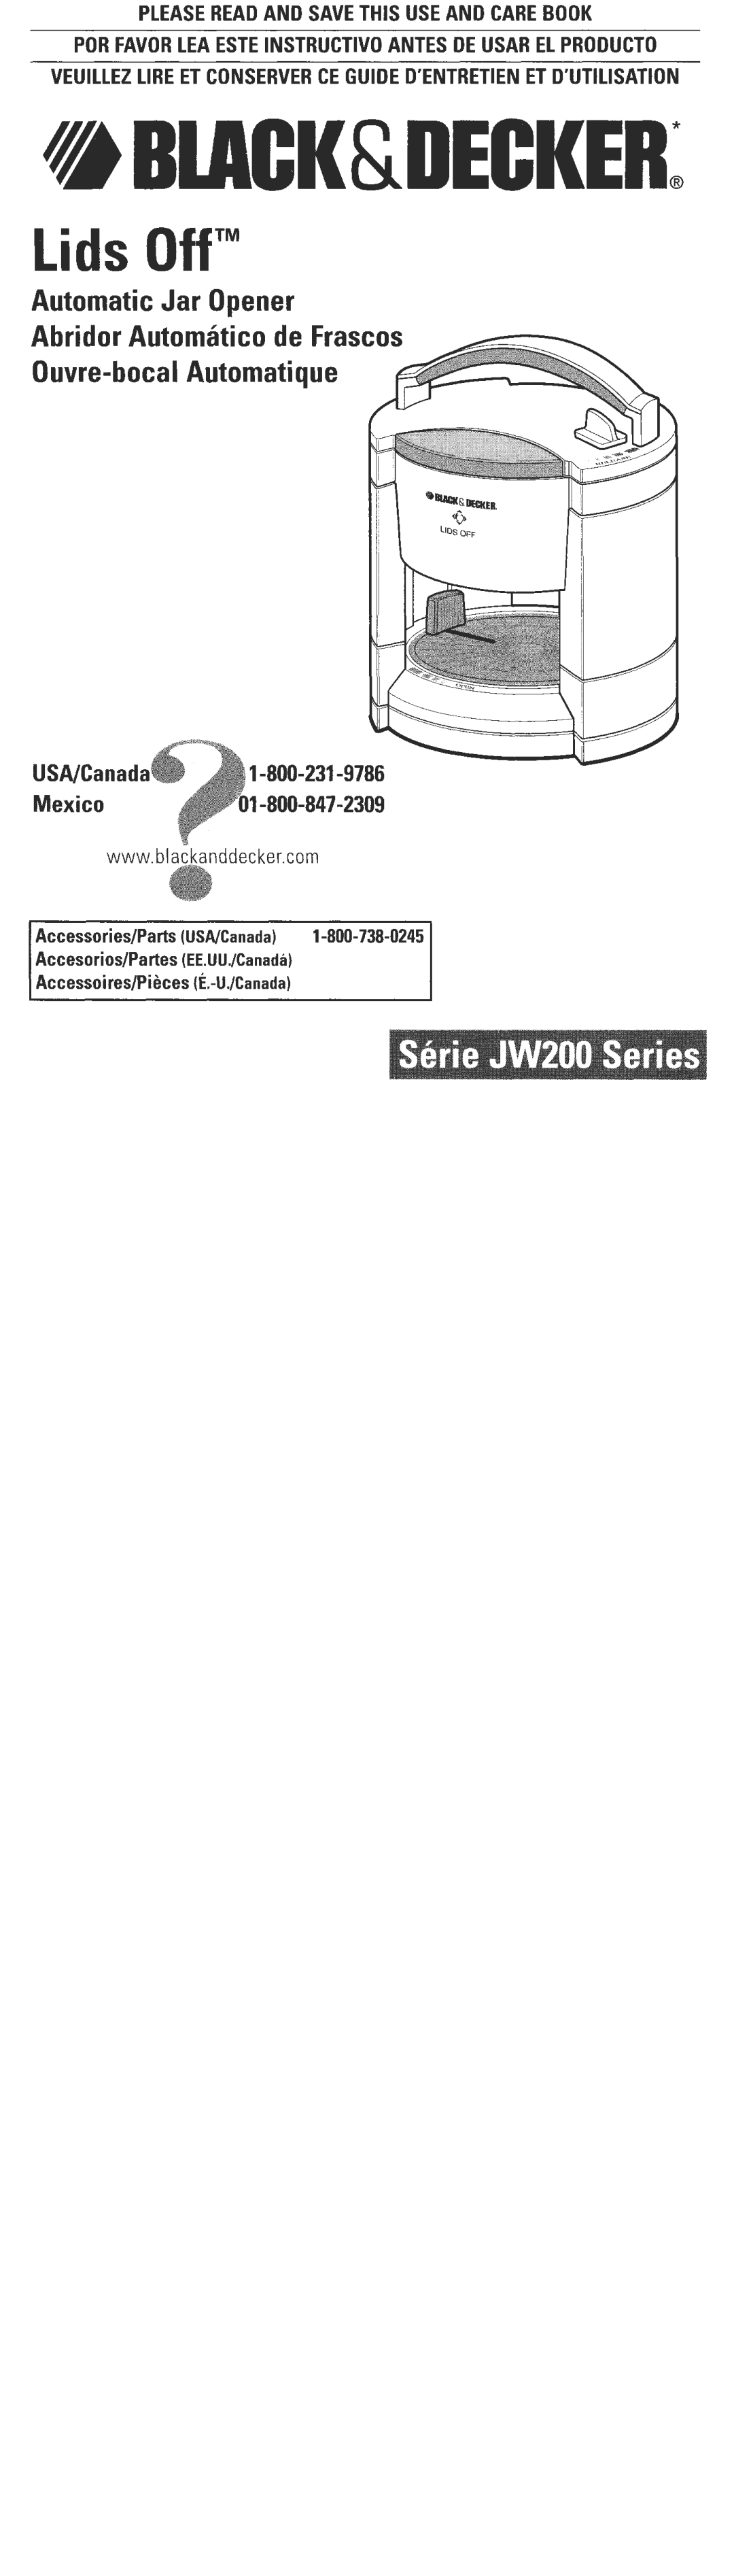 Black & Decker JW200 manual Lids OffTM, Automatic Jar Opener Abridor Automatico de Frasco, Ouvre-bocal Automatique 